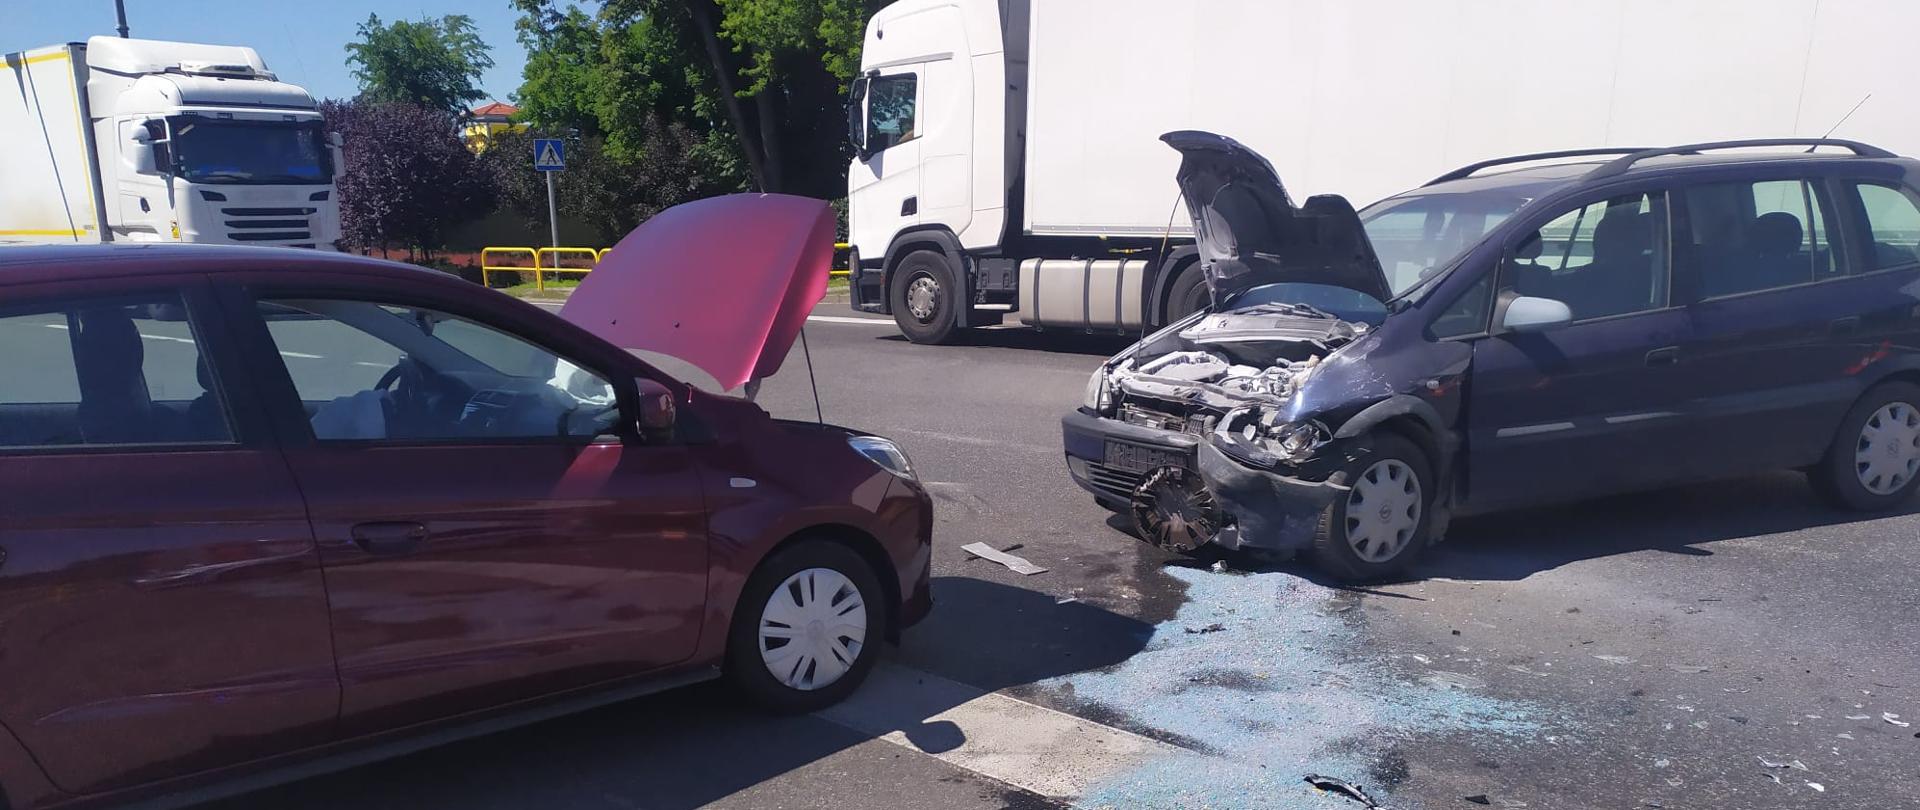 Zdjęcie przedstawia dwa samochody osobowe, które brały udział w wypadku.